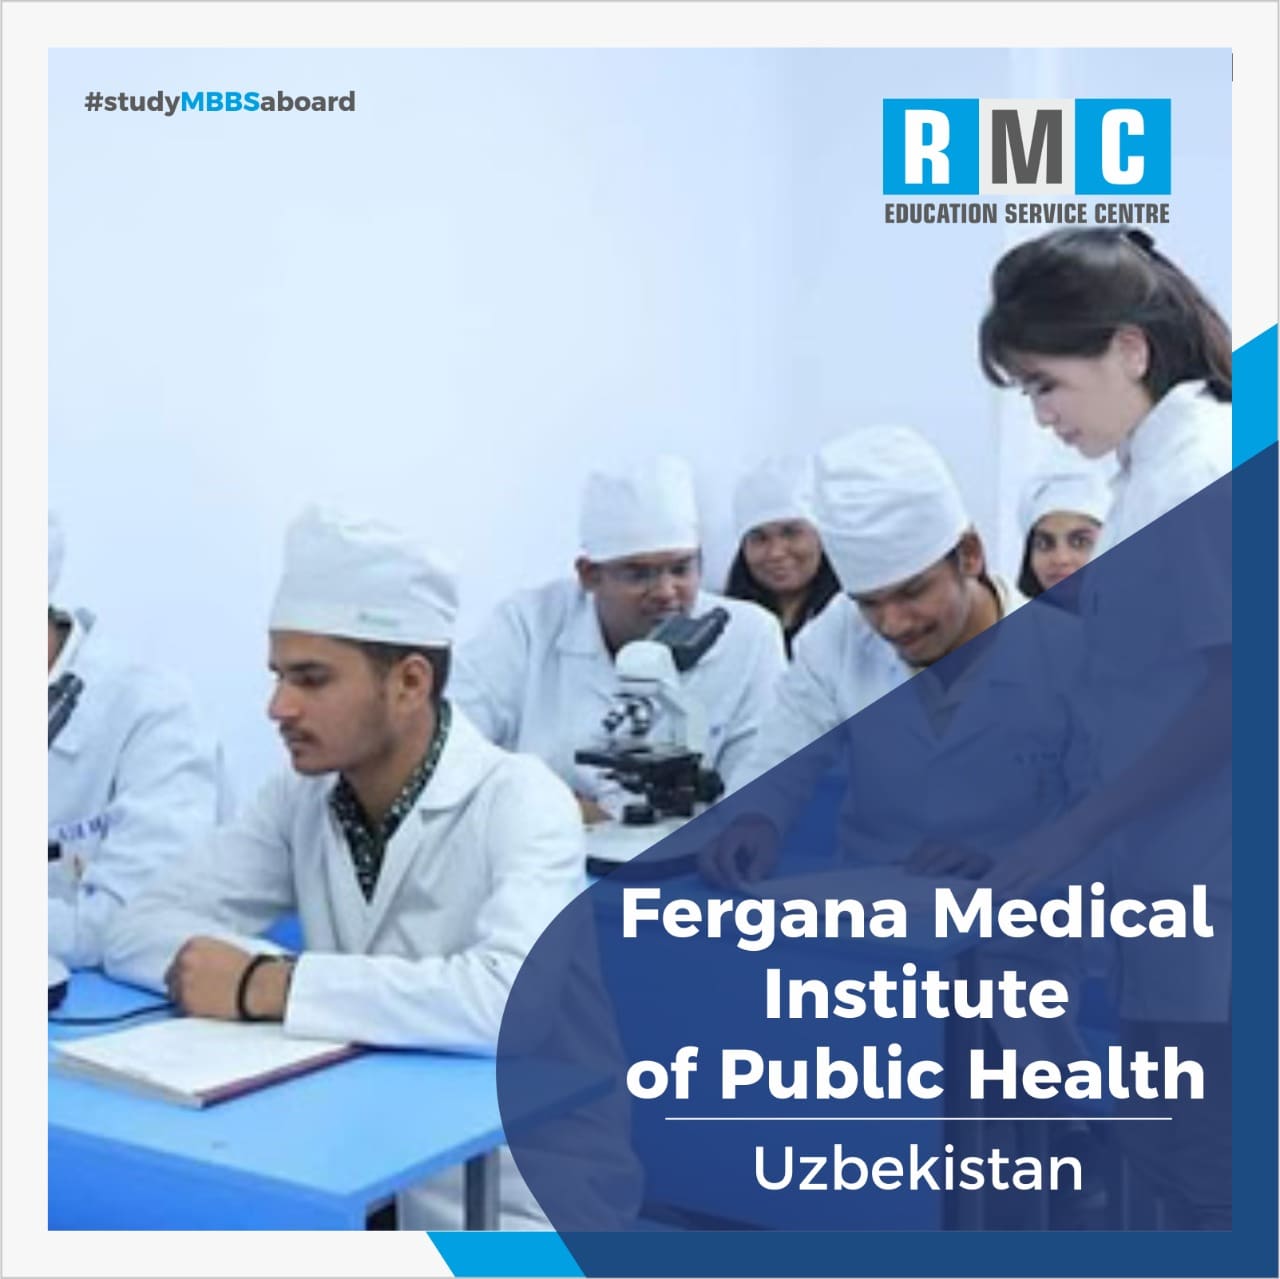 Fergana Medical Institute of Public Health